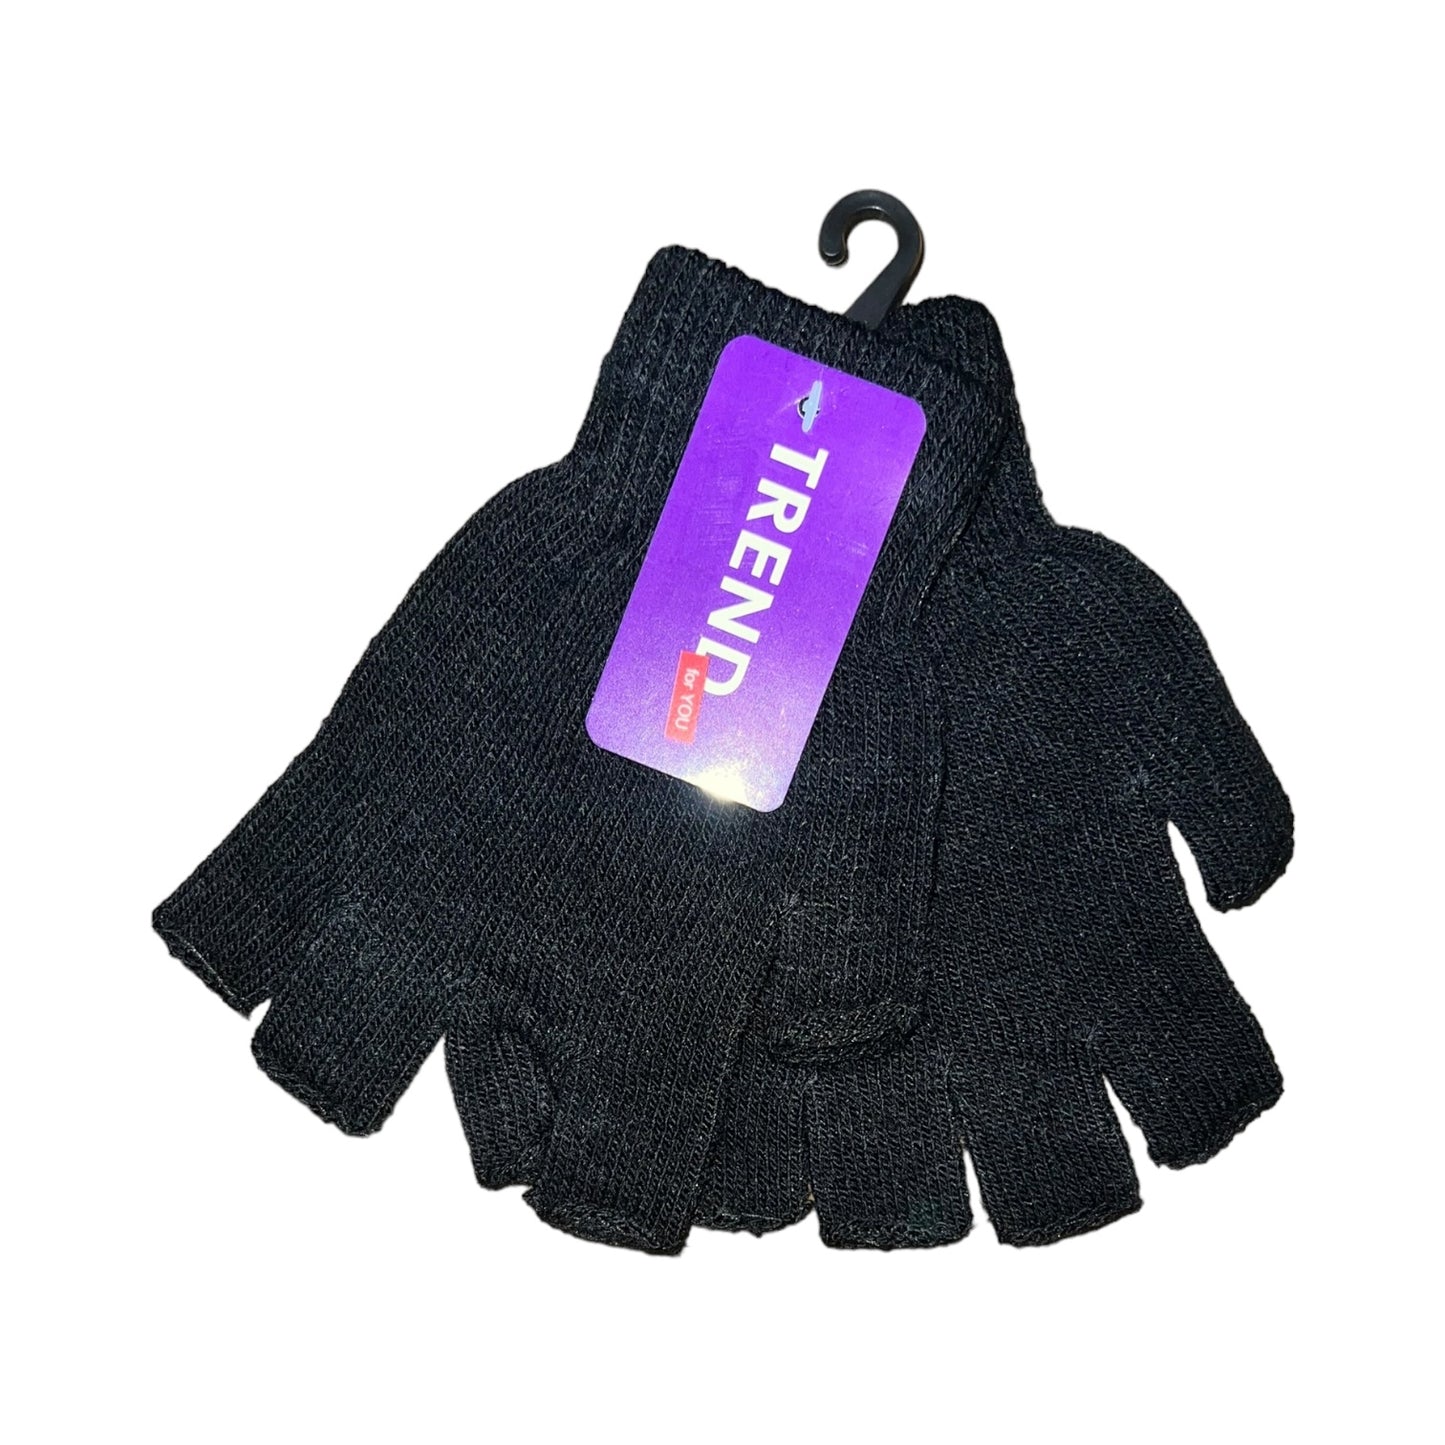 Trend Fingerless Gloves 12-Pairs